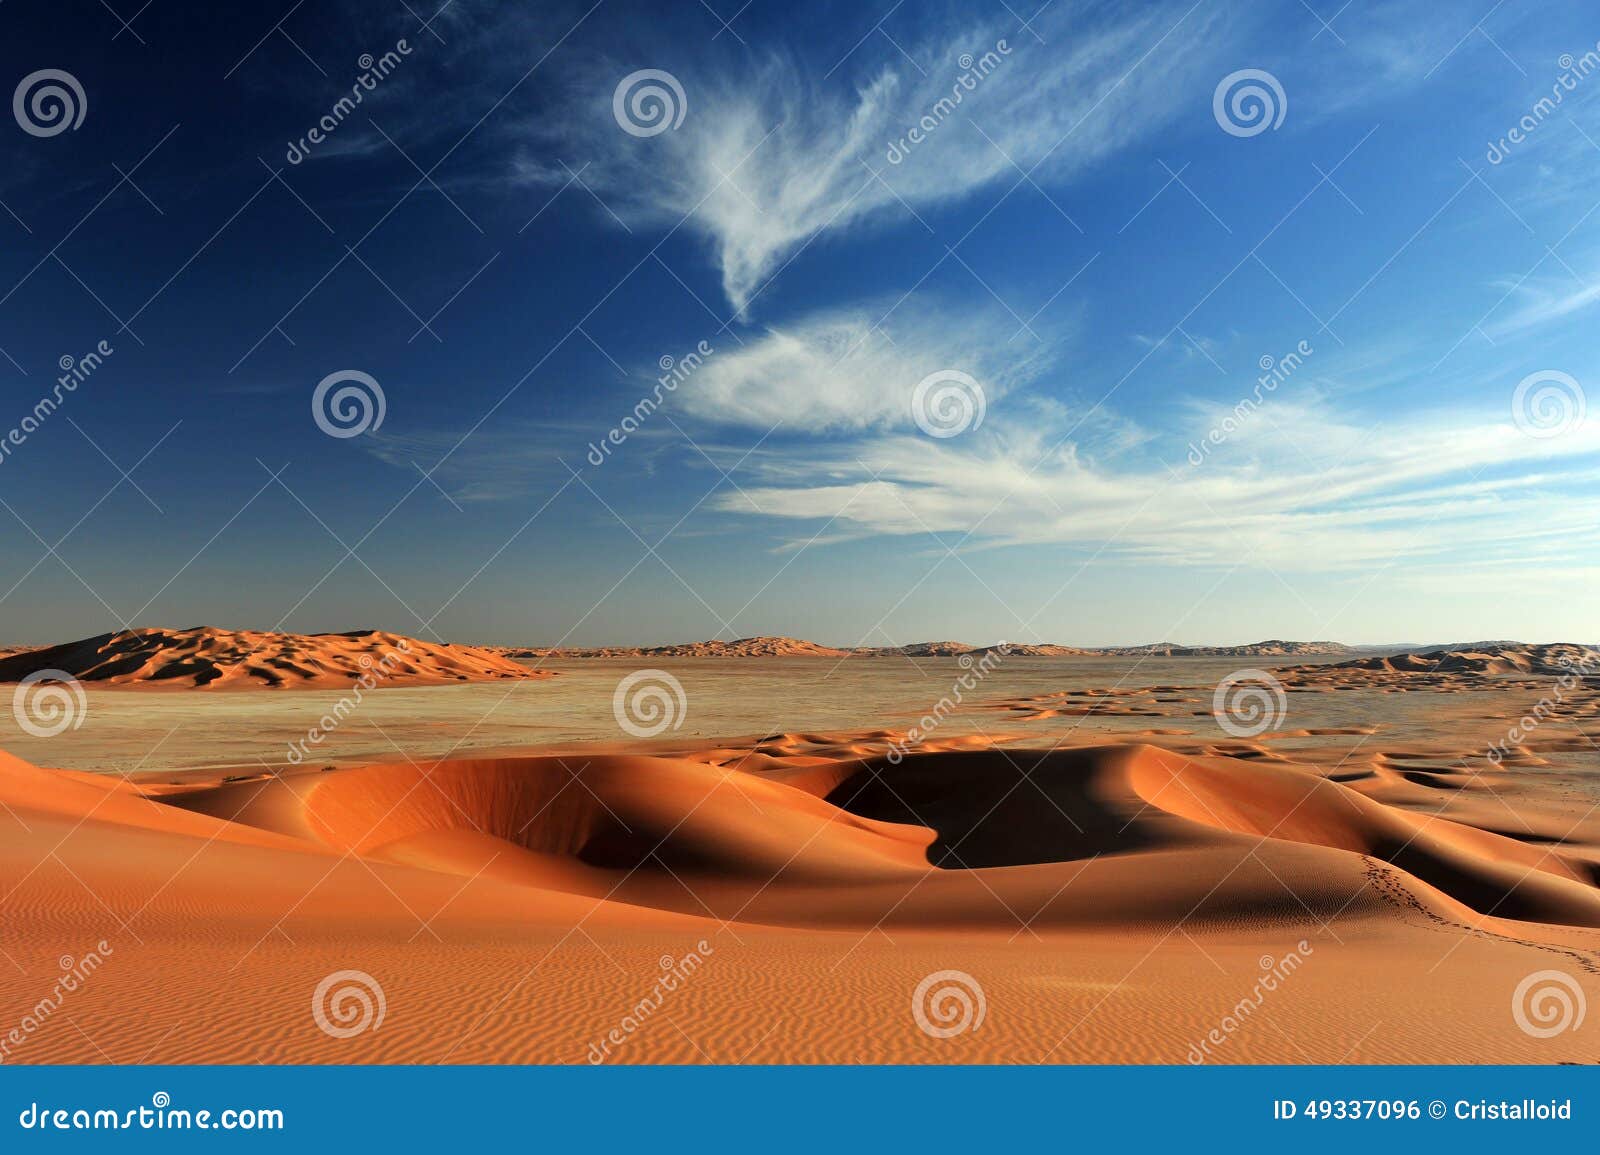 sand dunes in rub al khali desert